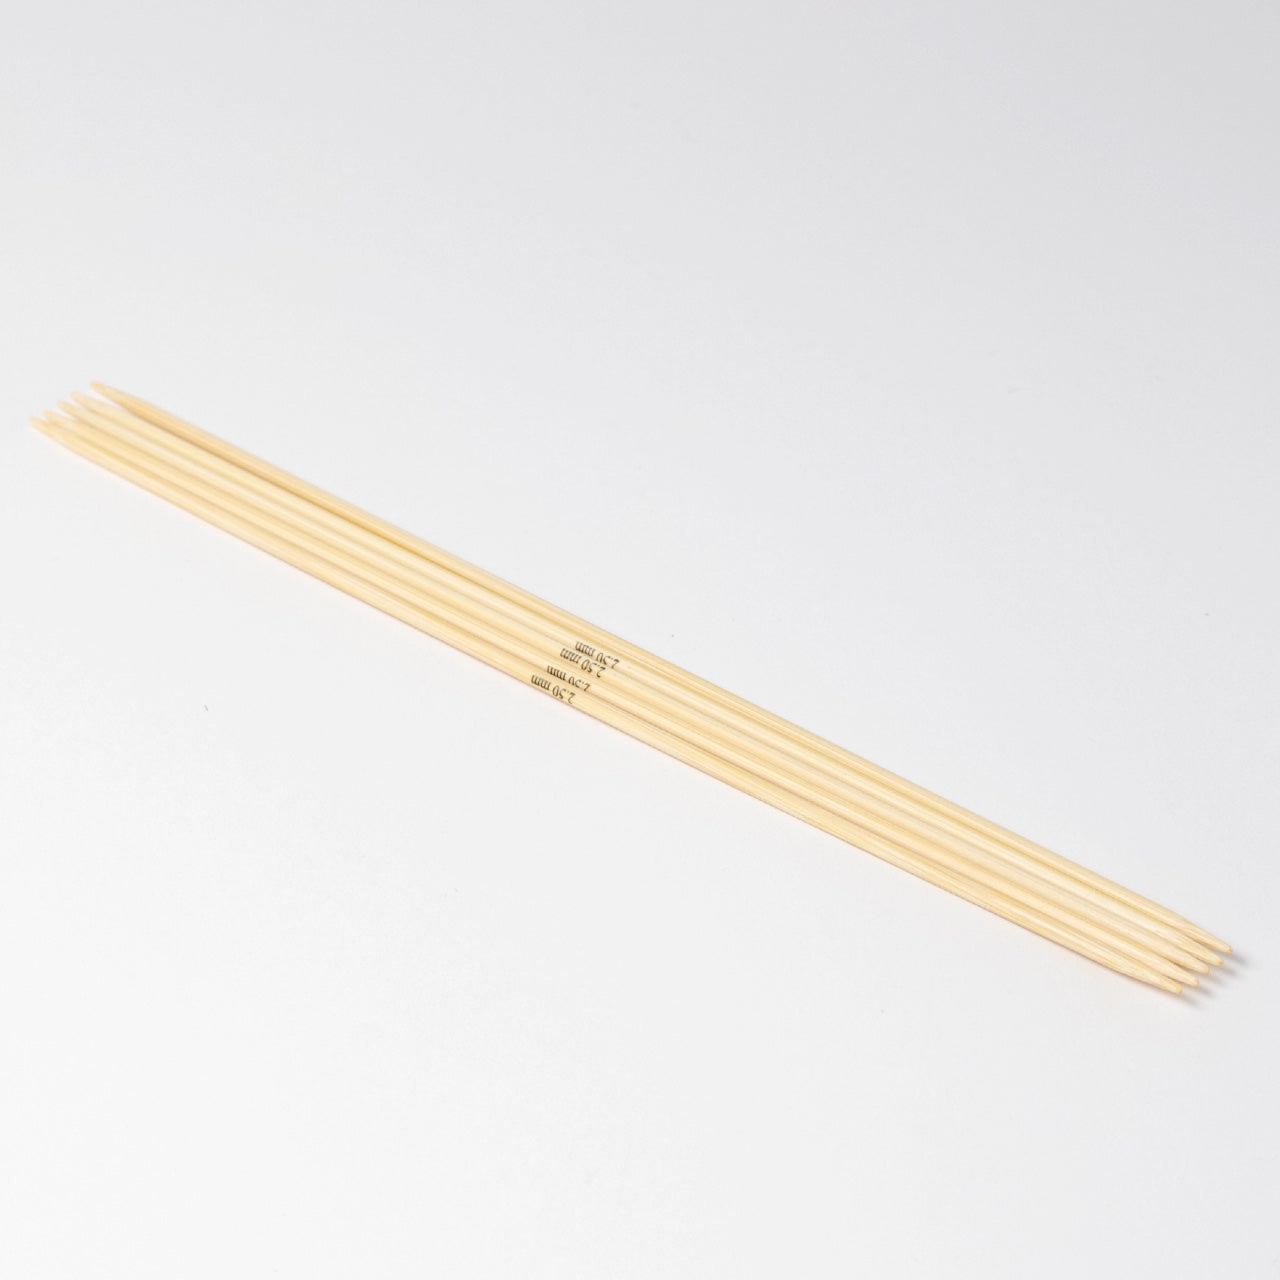 Hjertegarn // STYLE BAMBOO // Strømpepinde 20 cm i bambus str. 2,5 mm